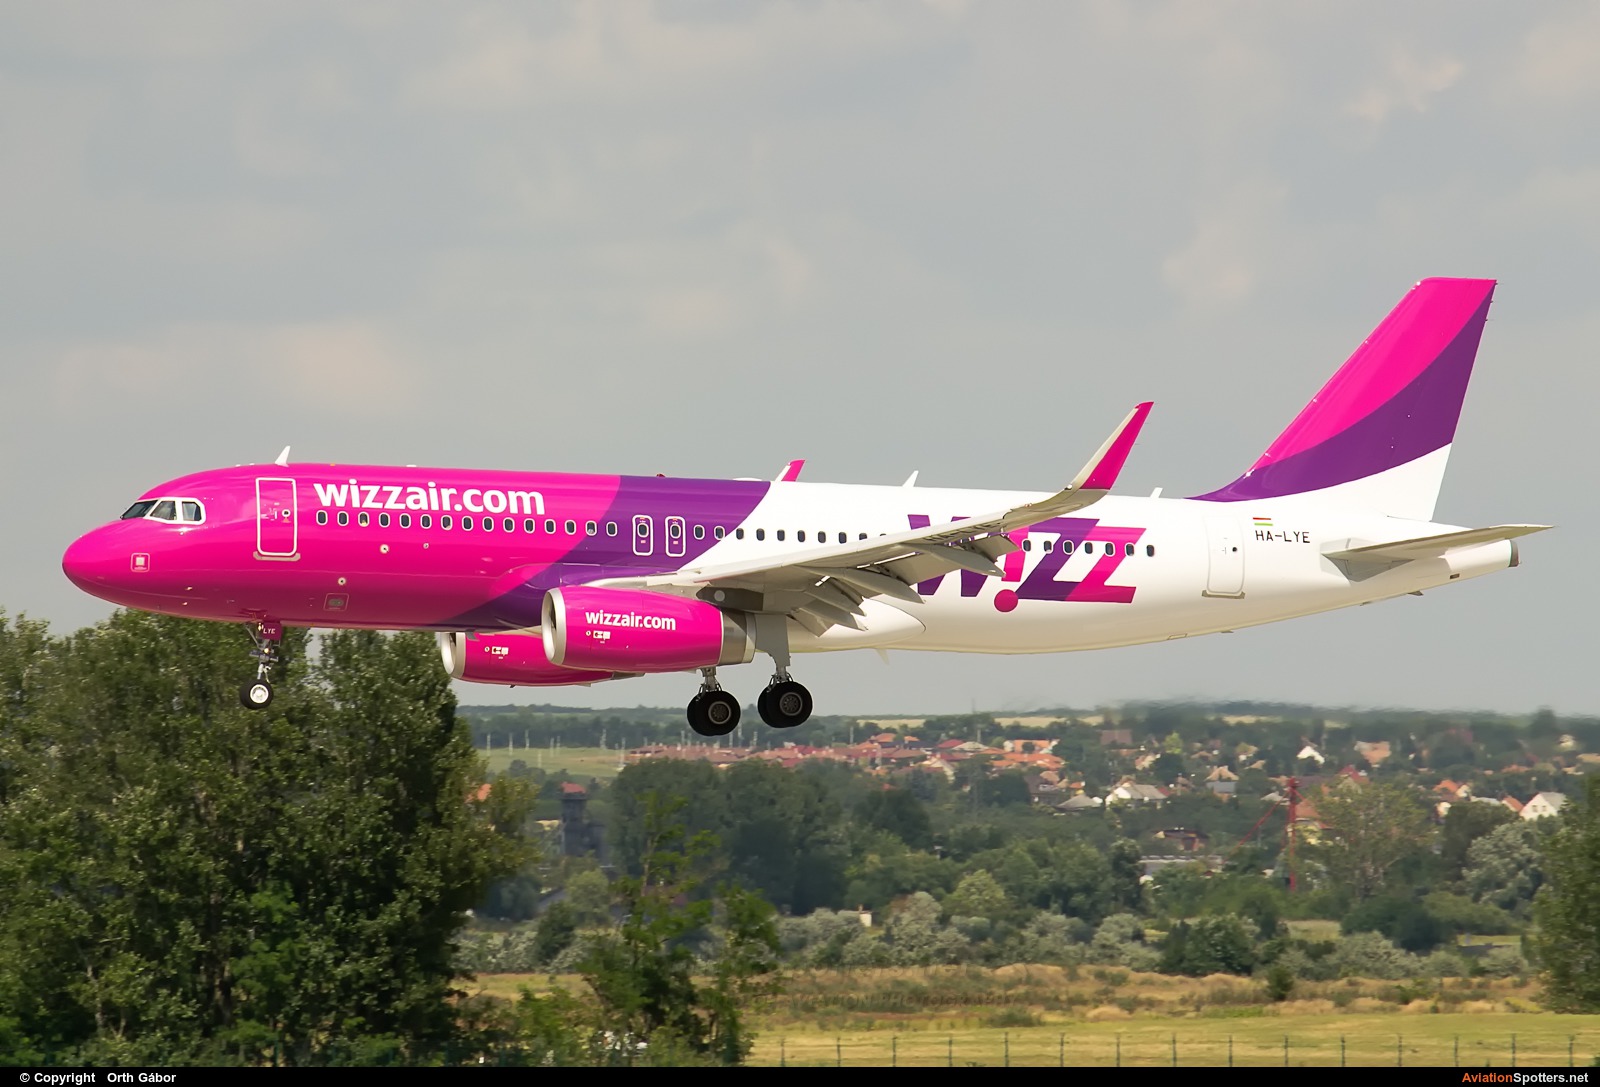 Wizz Air  -  A320-232  (HA-LYE) By Orth Gábor (Roodkop)